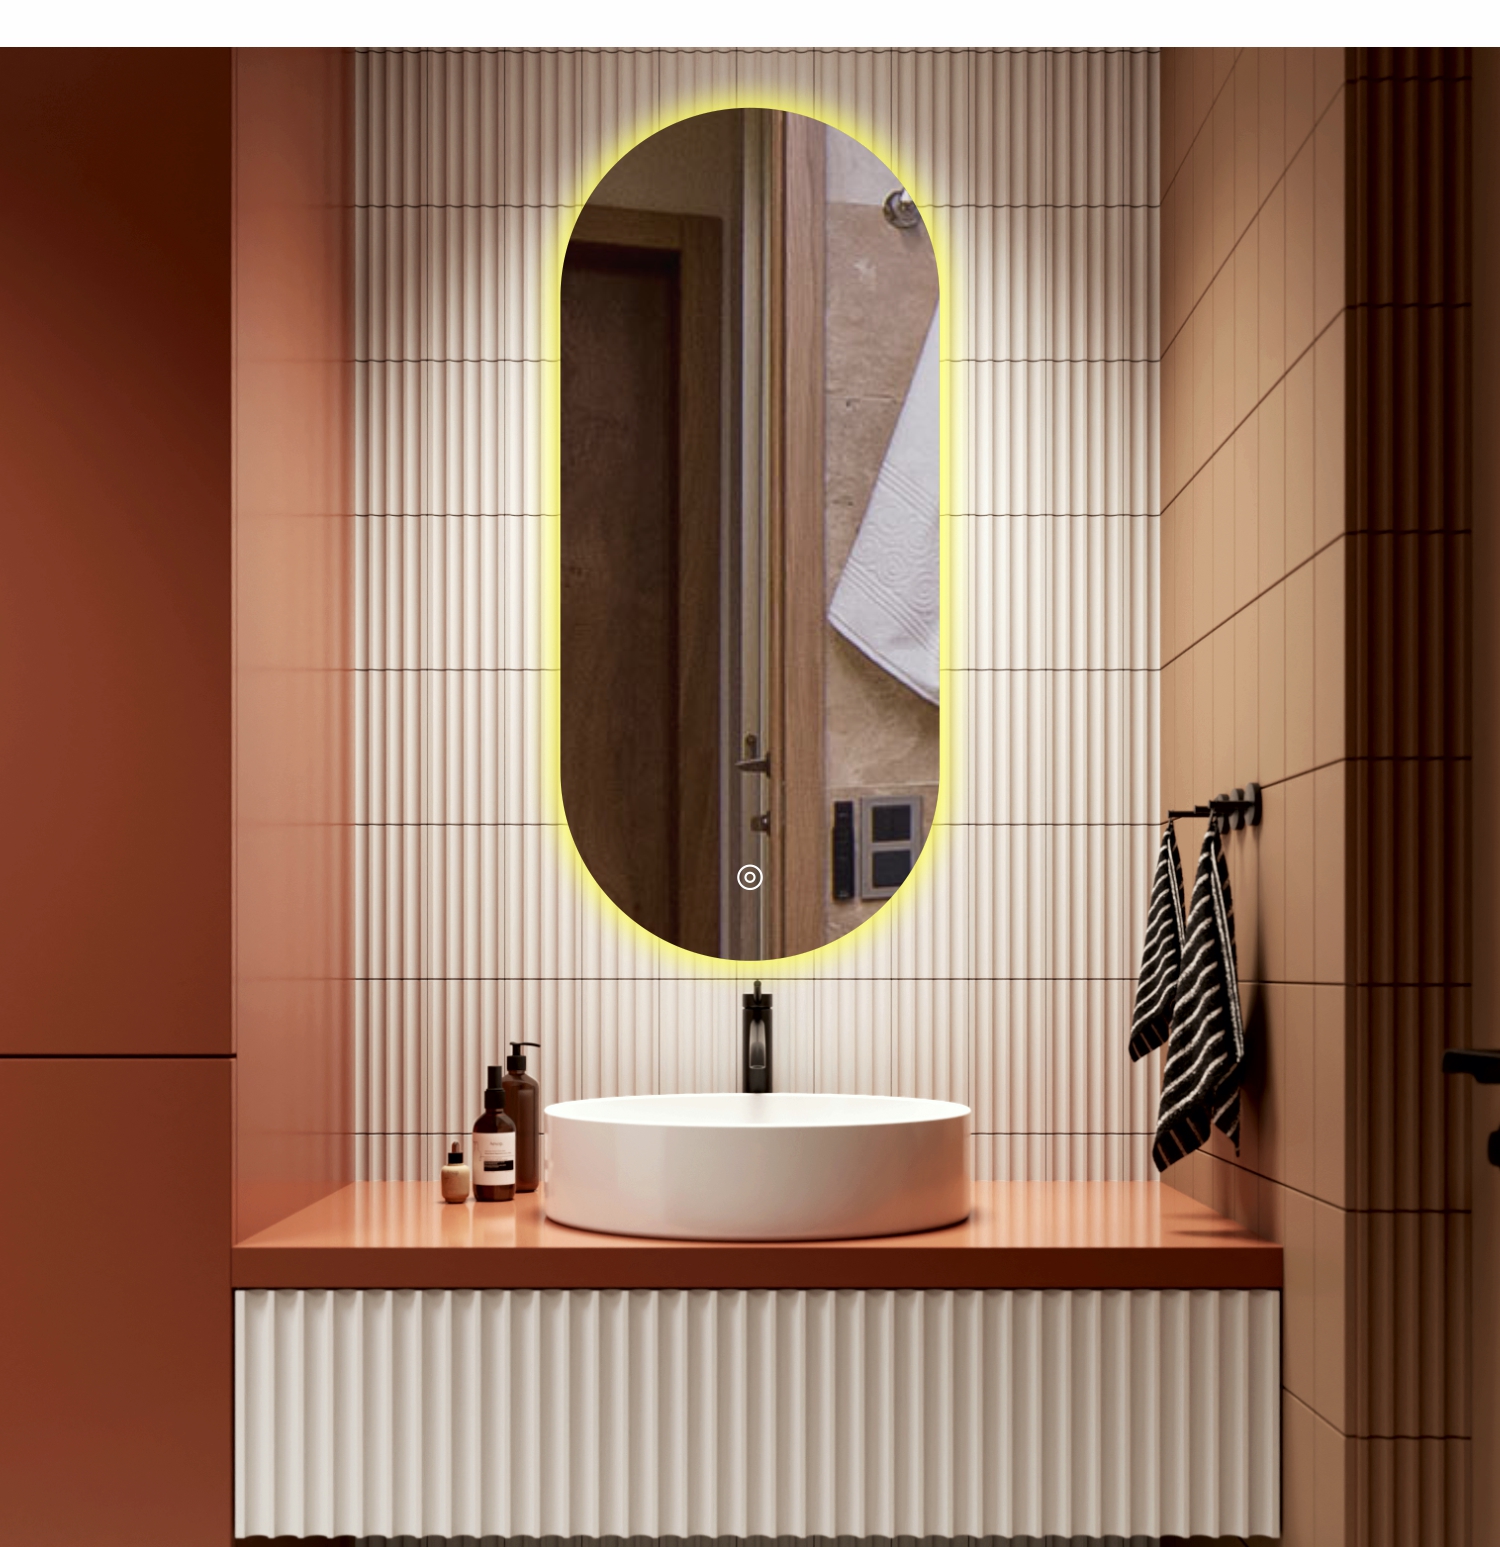 Зеркало для ванной Alfa Mirrors с теплой подсветкой 3200К овальное 40х90см, арт. AN-49t клейкая лента для крепления зеркал aviora